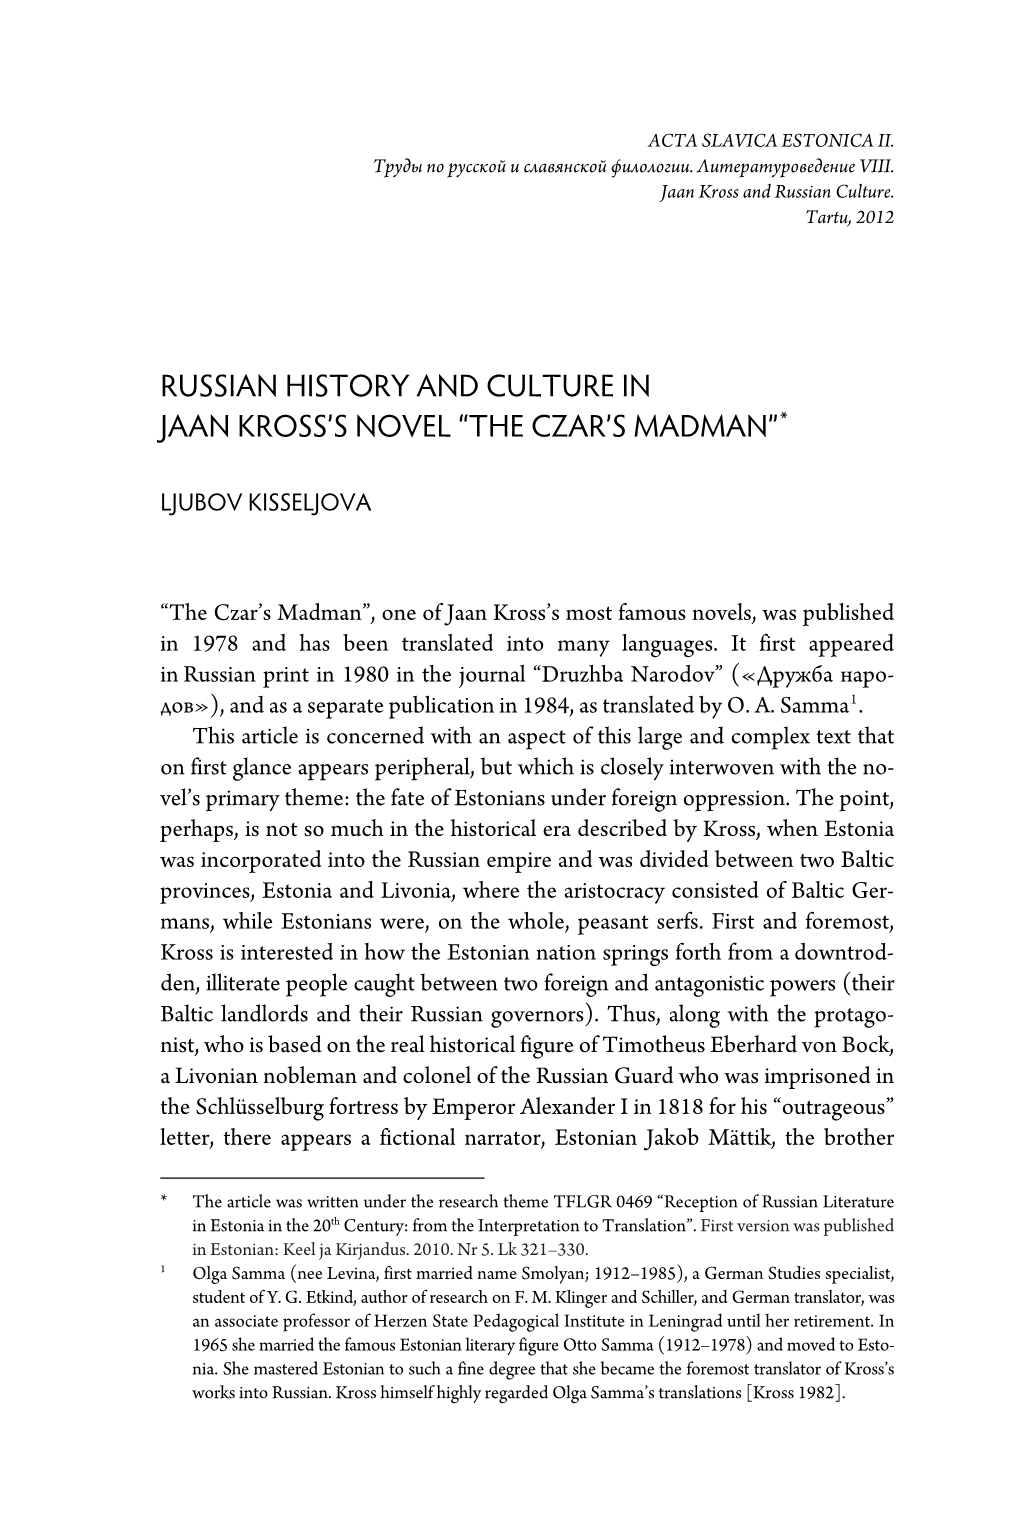 Ljubov Kisseljova. Russian History and Culture in Jaan